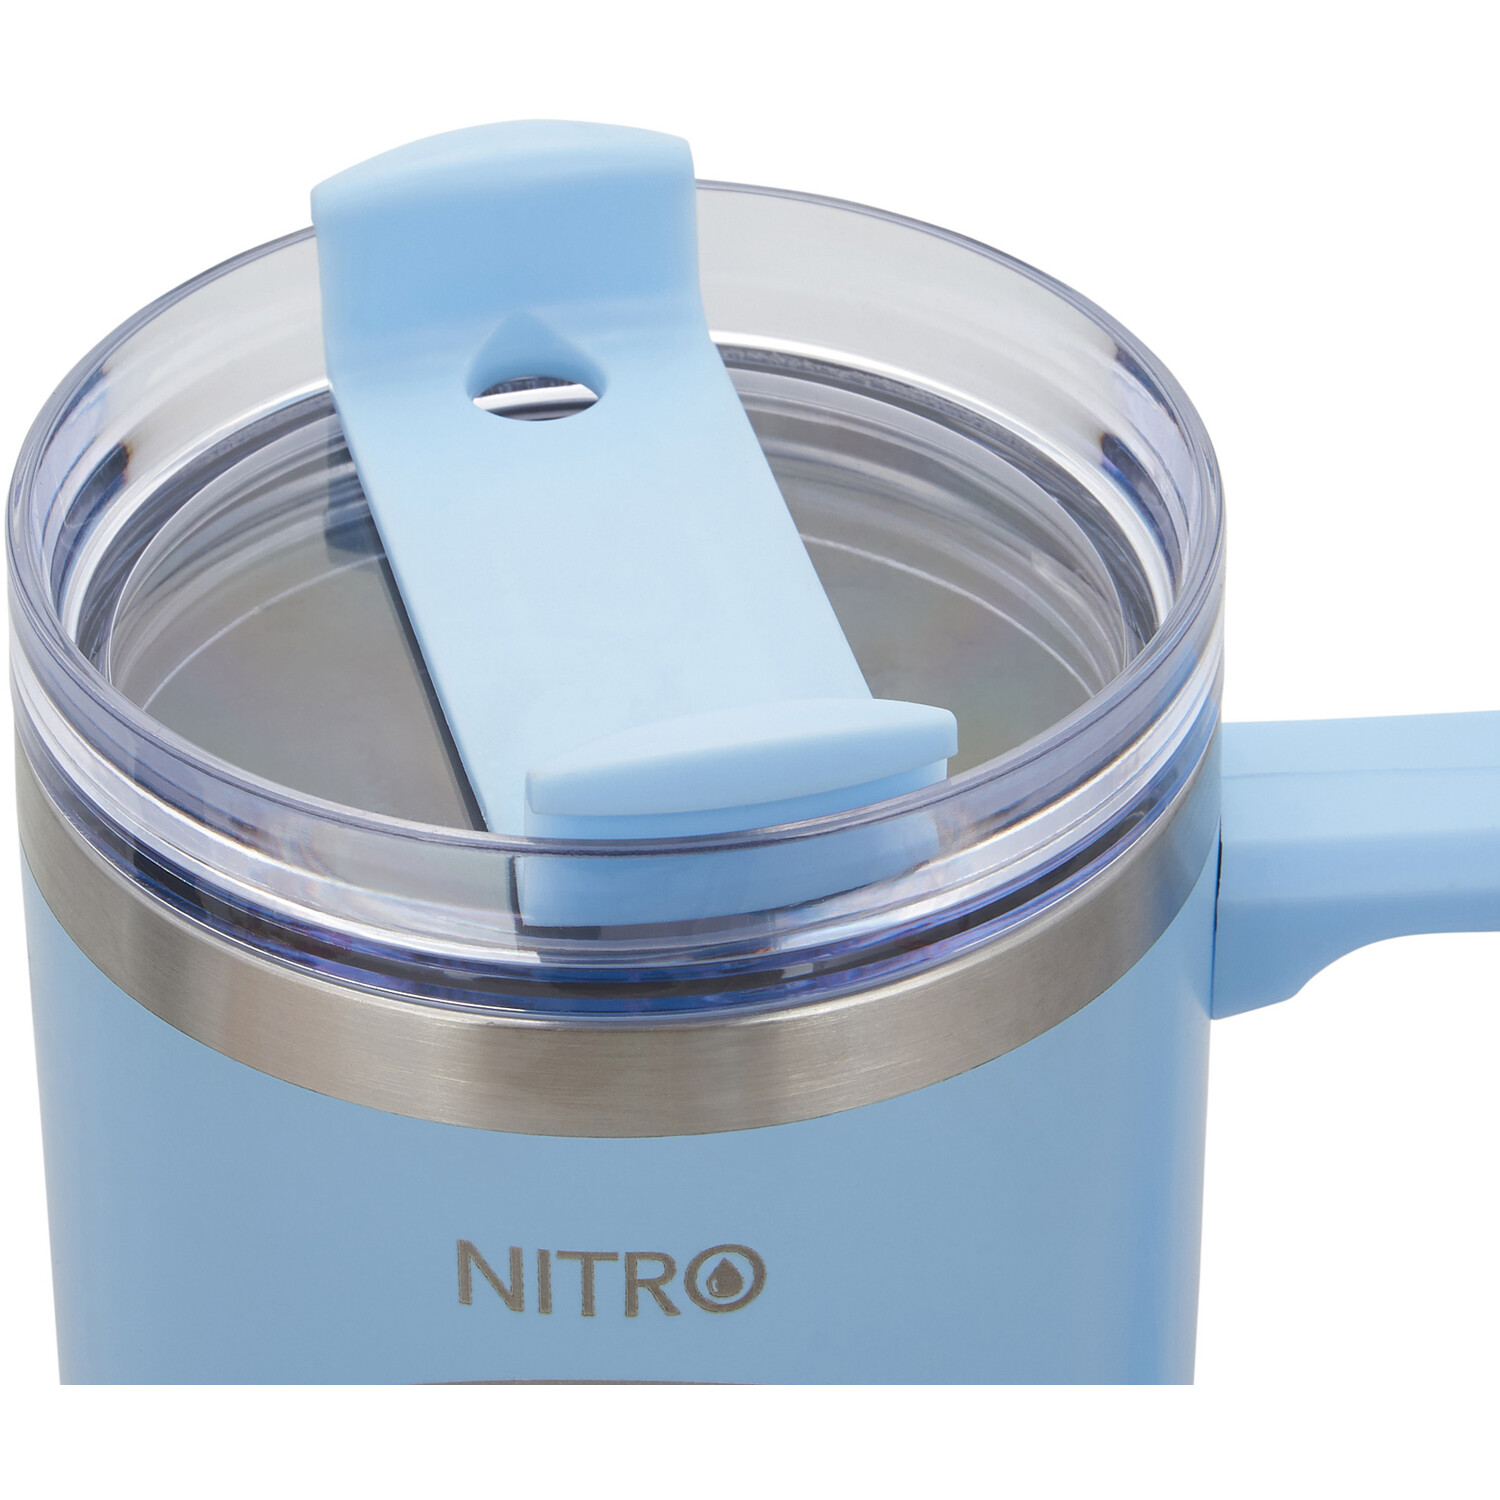 Nitro Pastels 1.2L Tumbler Image 7